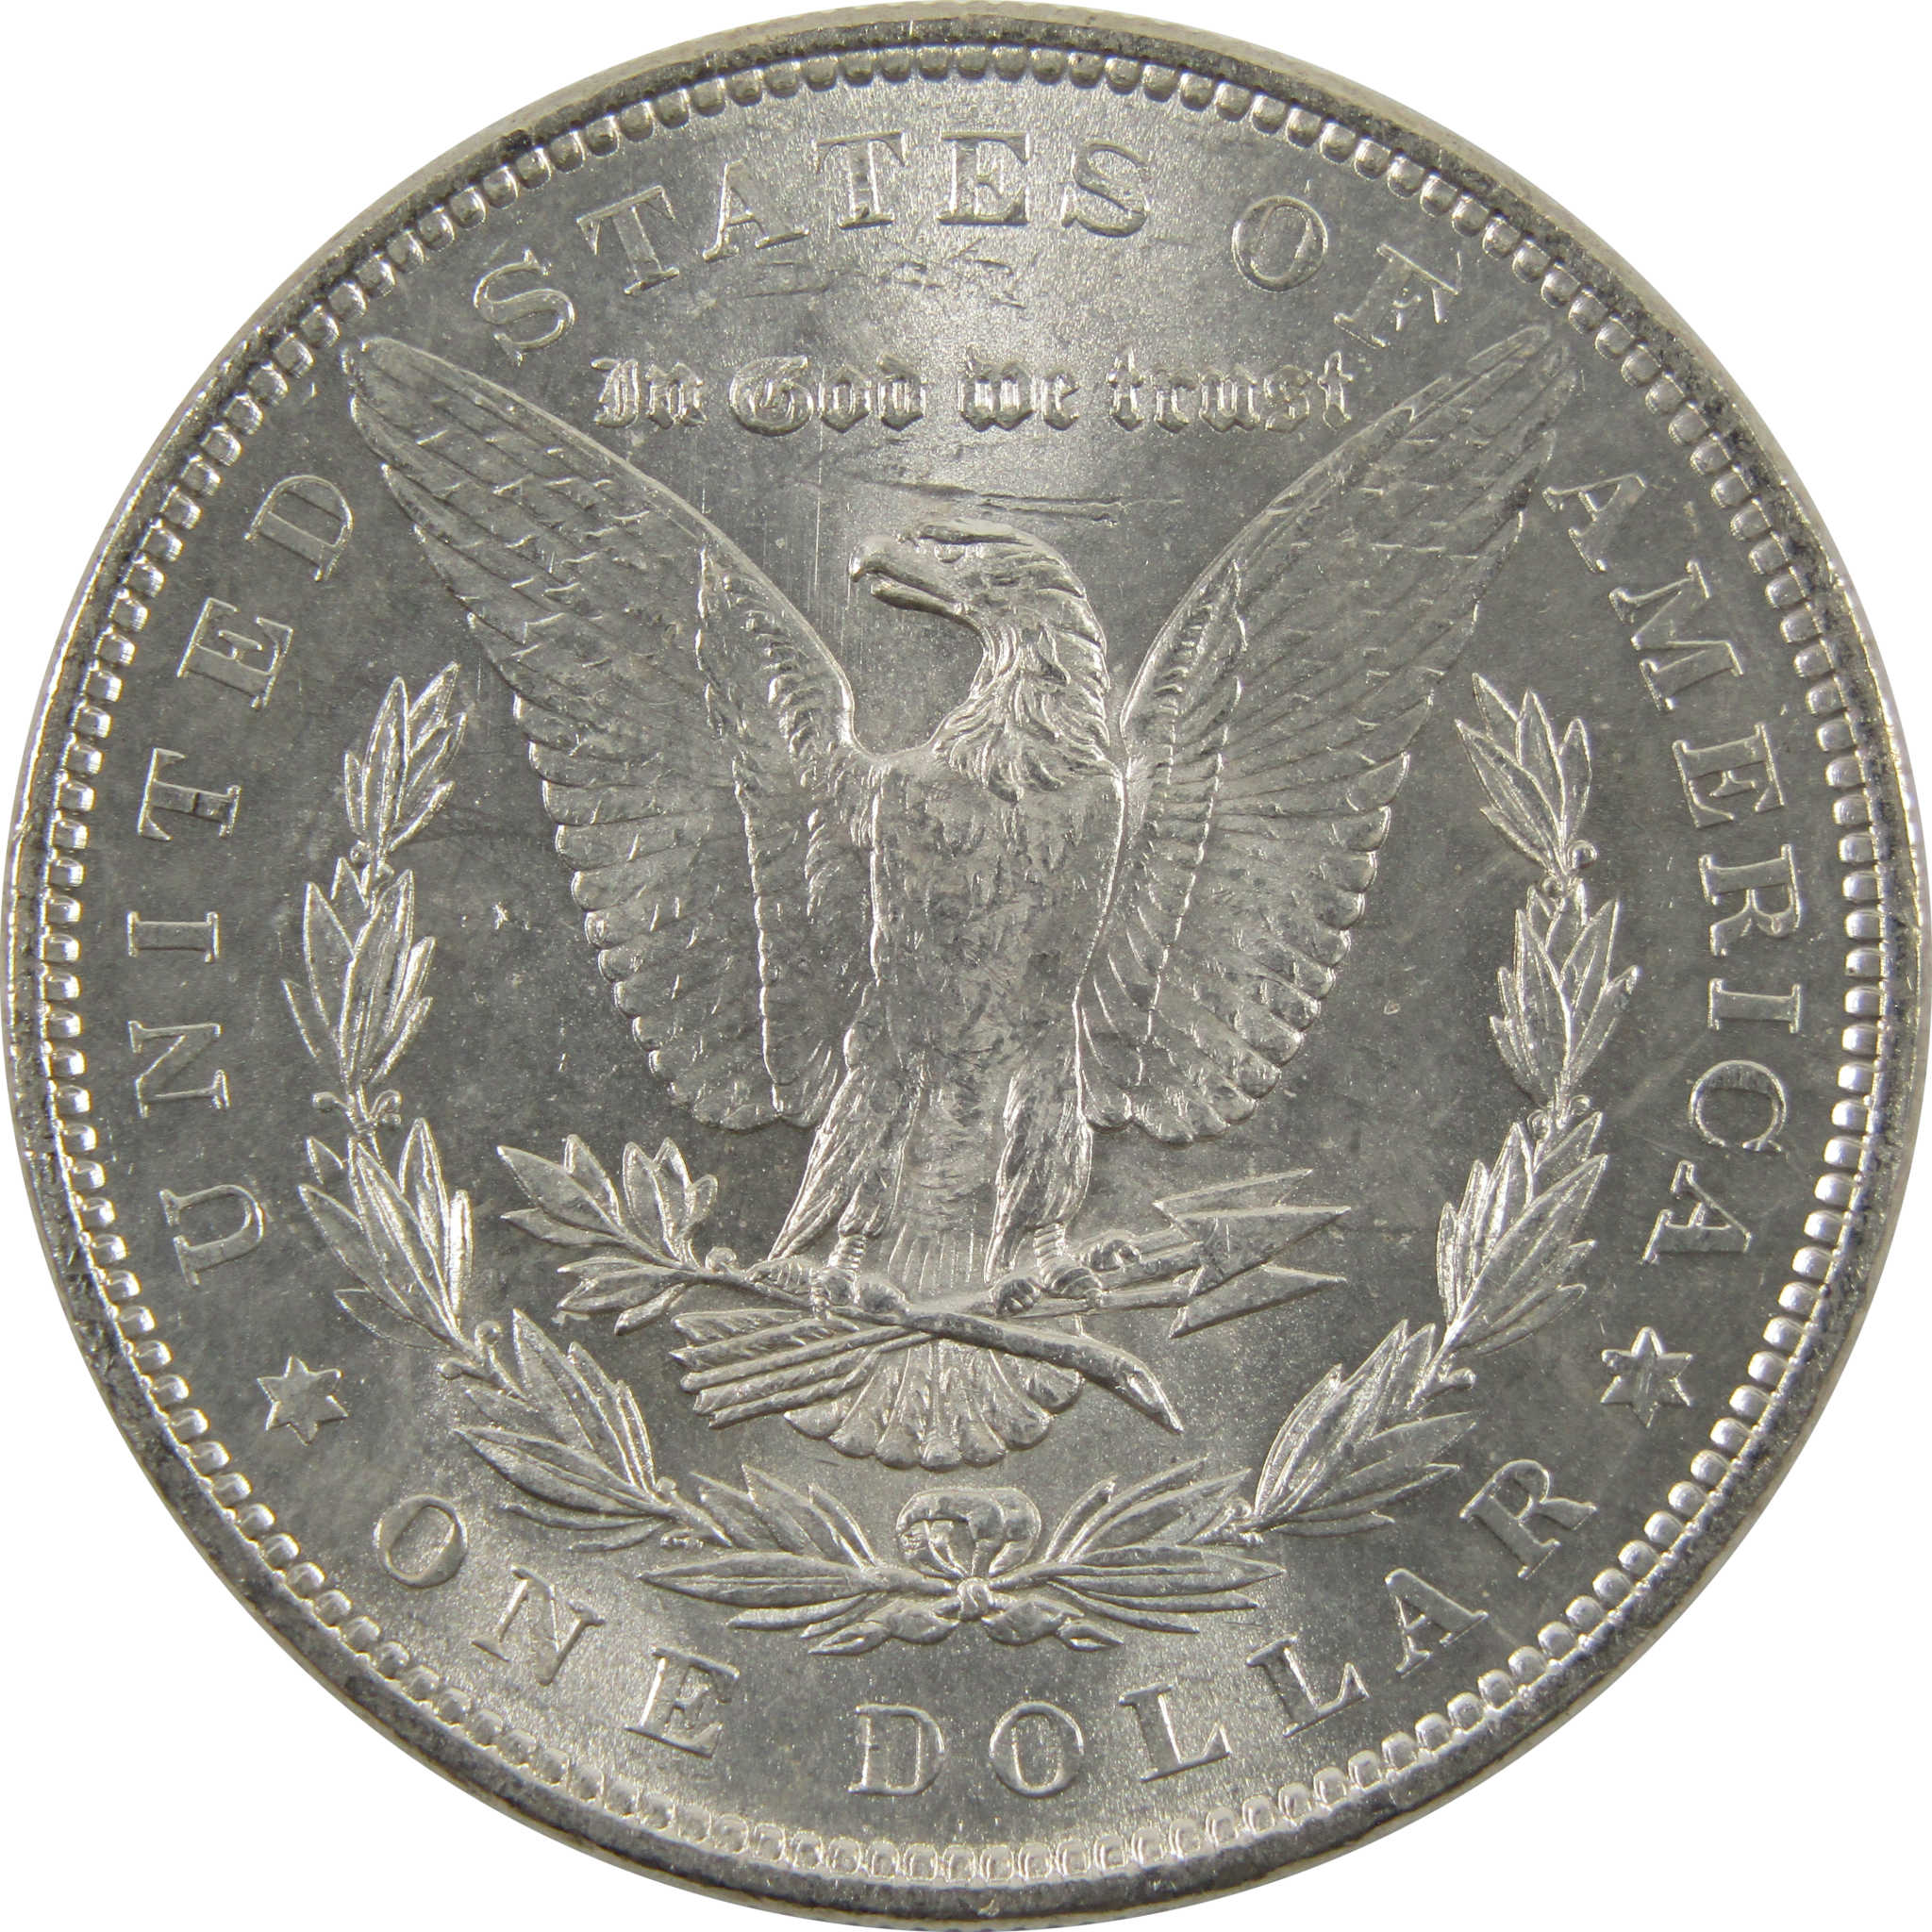 1879 Morgan Dollar BU Uncirculated 0.9 Silver $1 Coin SKU:I10312 - Morgan coin - Morgan silver dollar - Morgan silver dollar for sale - Profile Coins &amp; Collectibles